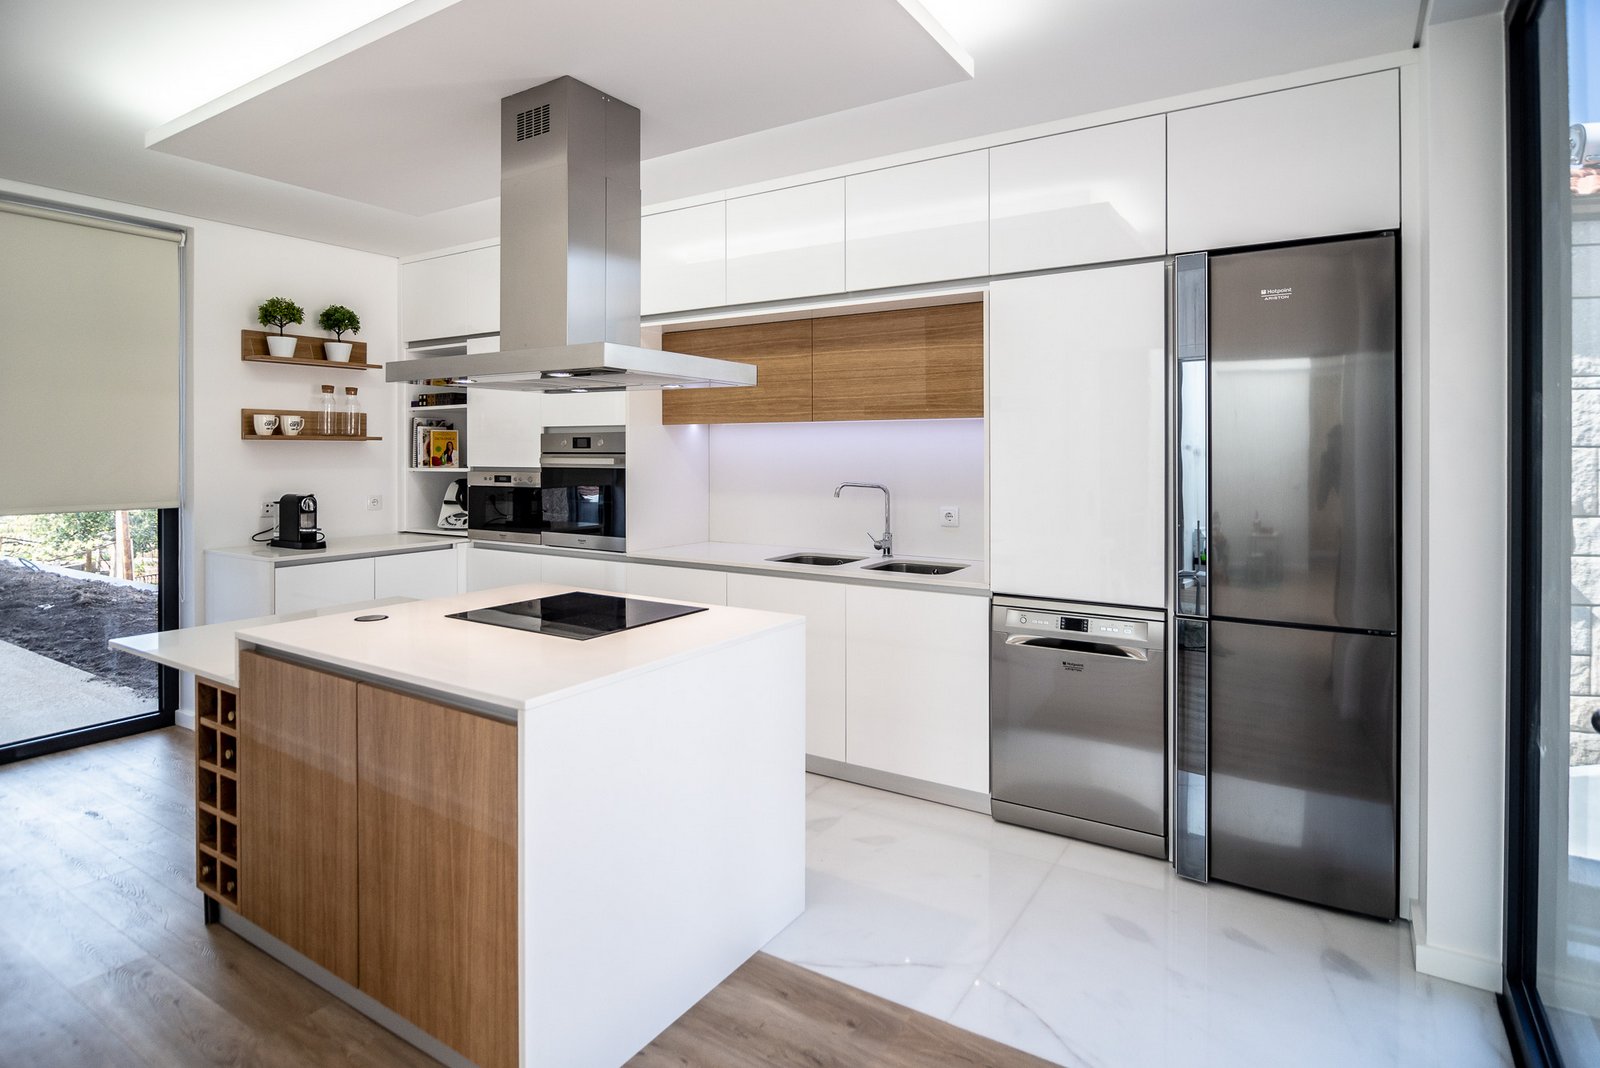 Ângela Pinheiro - Decoração de Interiores - Home Design - Decoração de Interiores - Cozinha em Branco e Carvalho